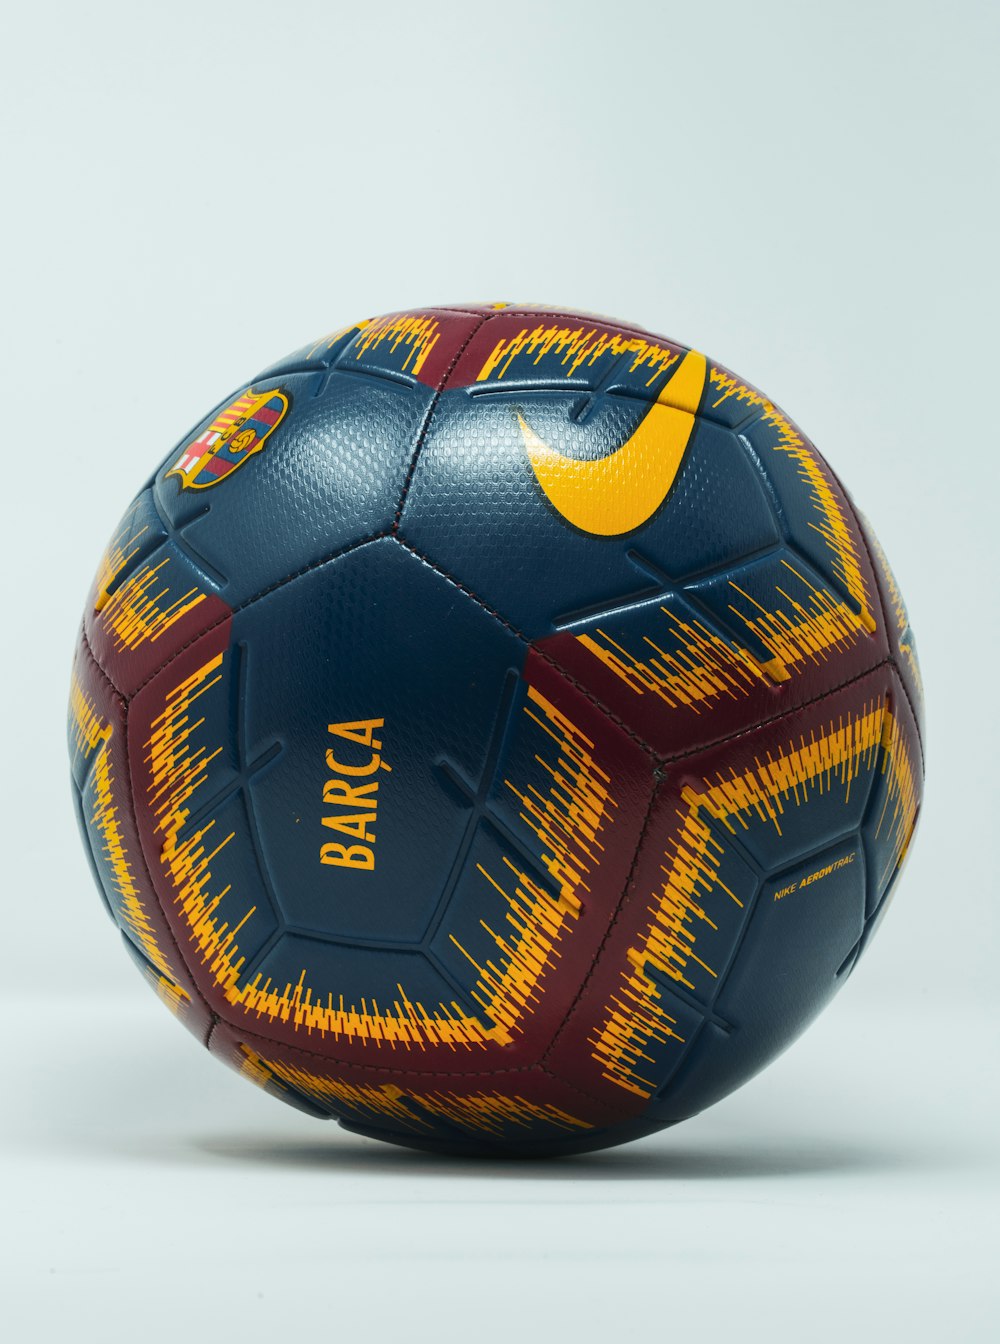 Foto Balón de fútbol Nike azul, granate y amarillo – Imagen Equipo gratis  en Unsplash